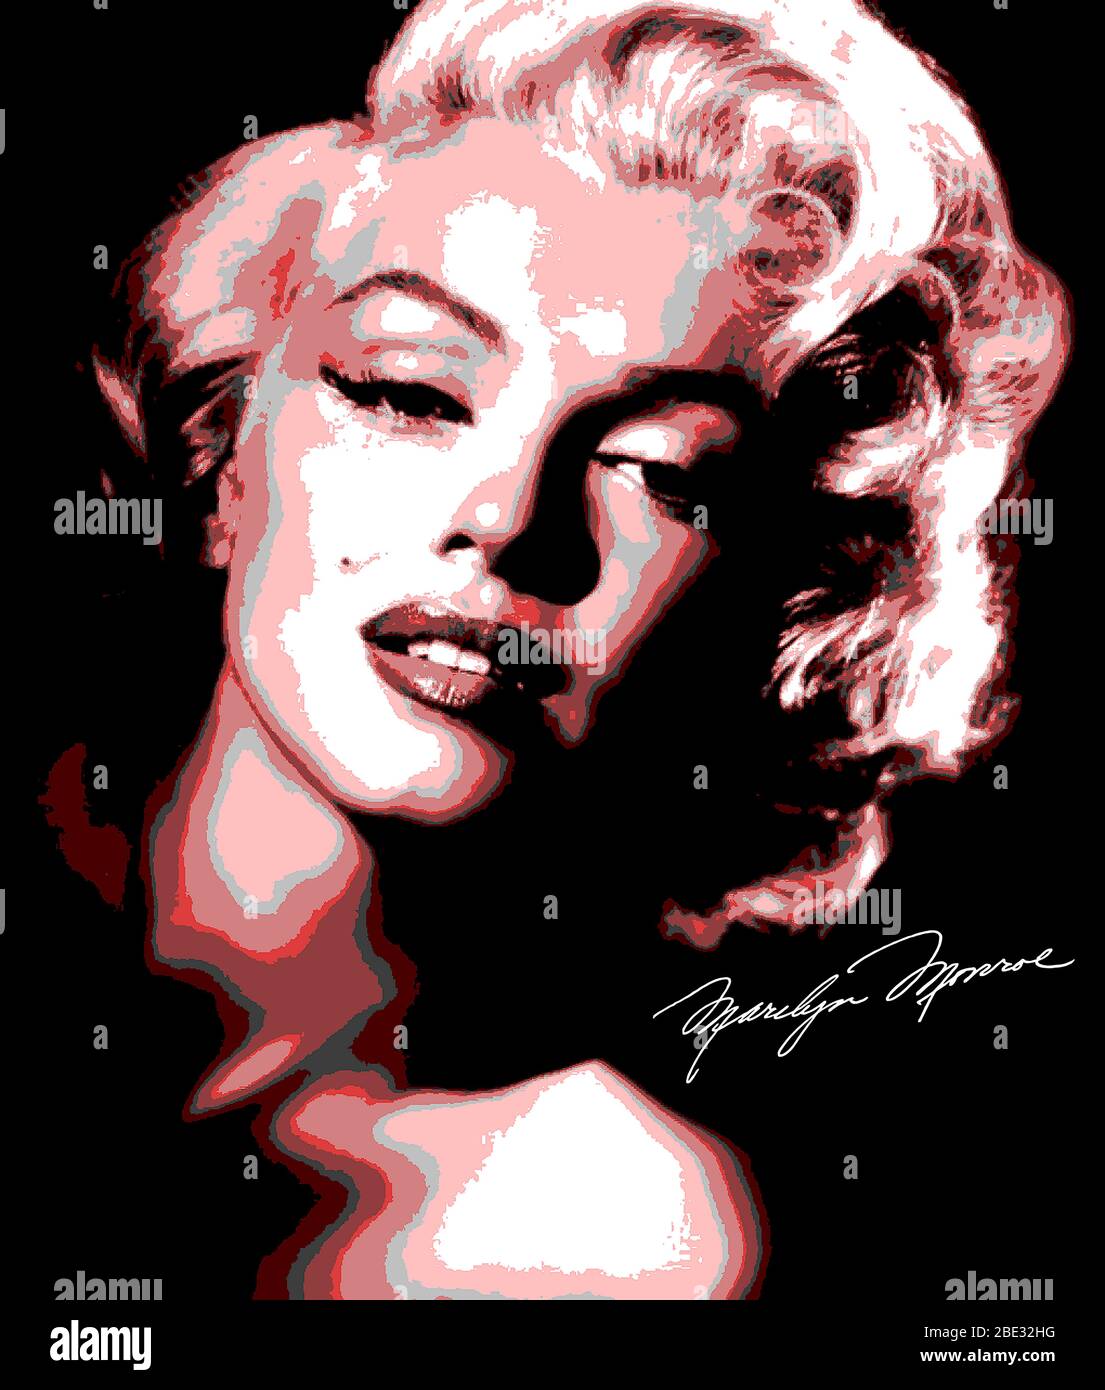 Illustrierter Kopf von Marilyn Monroe mit Unterschrift und Posterisierung Stockfoto